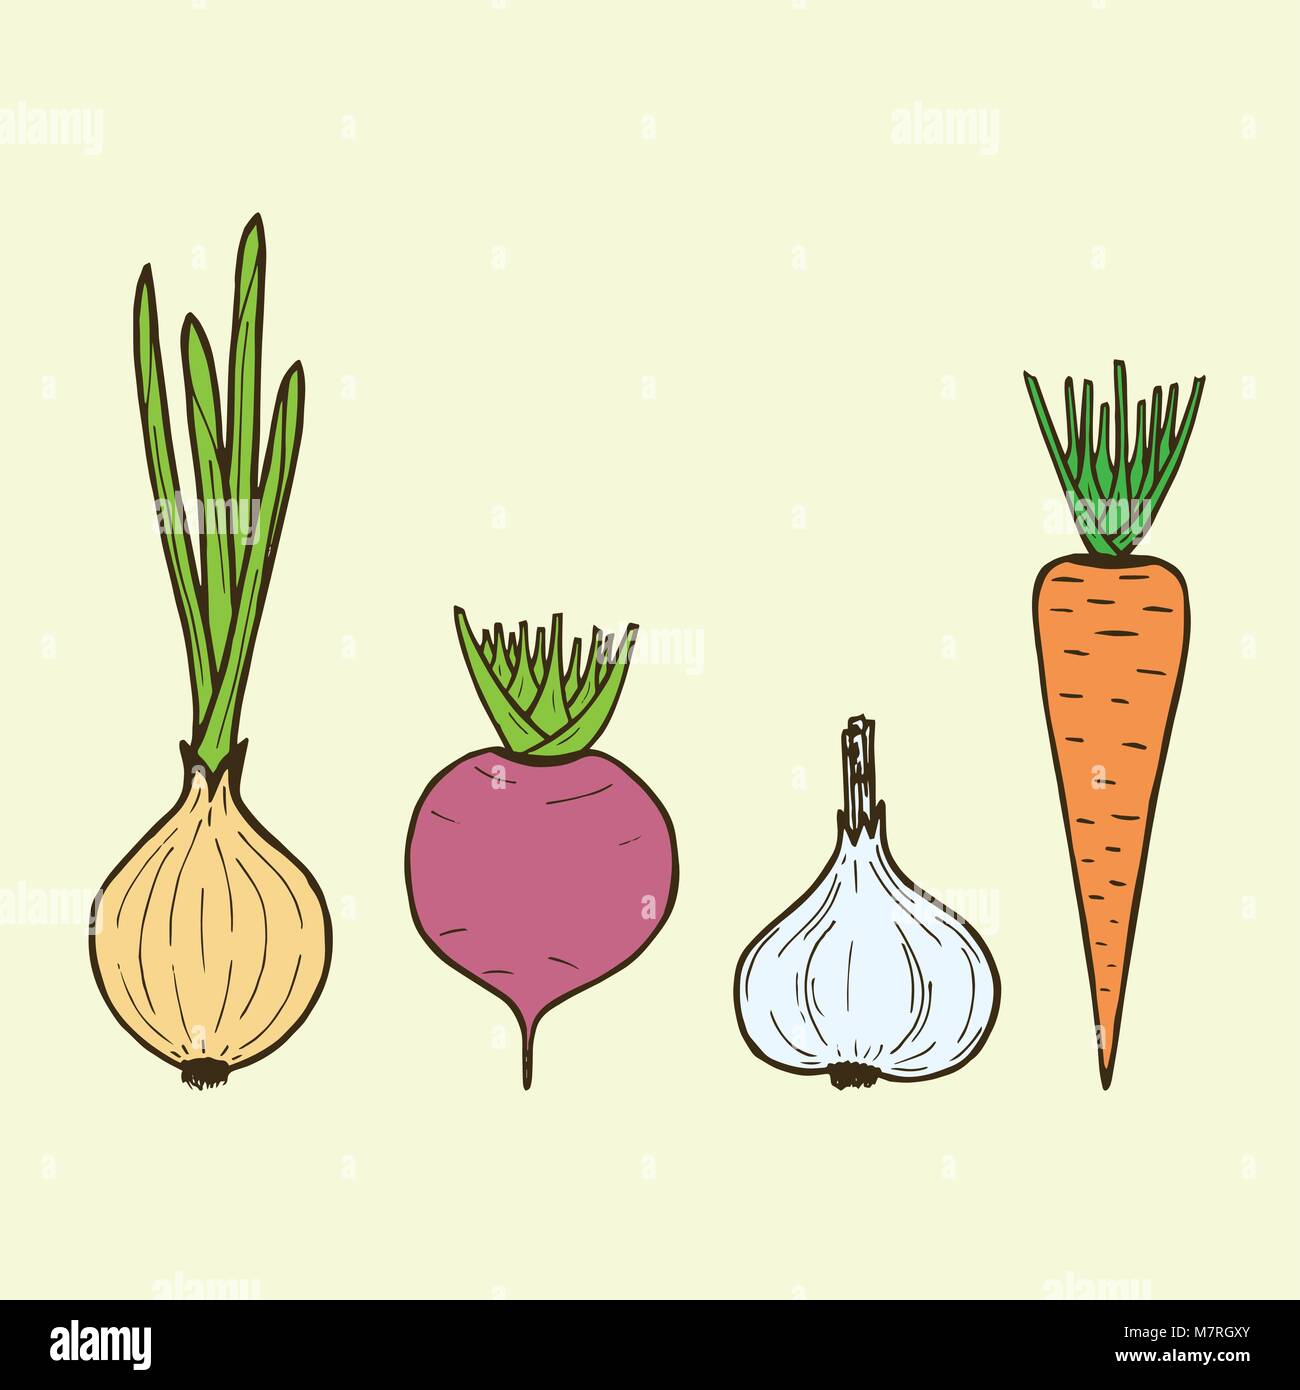 Зеленый лук морковь свекла овощи вектор. Картина для кухни пучок с овощами свекла, морковь, лук нарисовать.